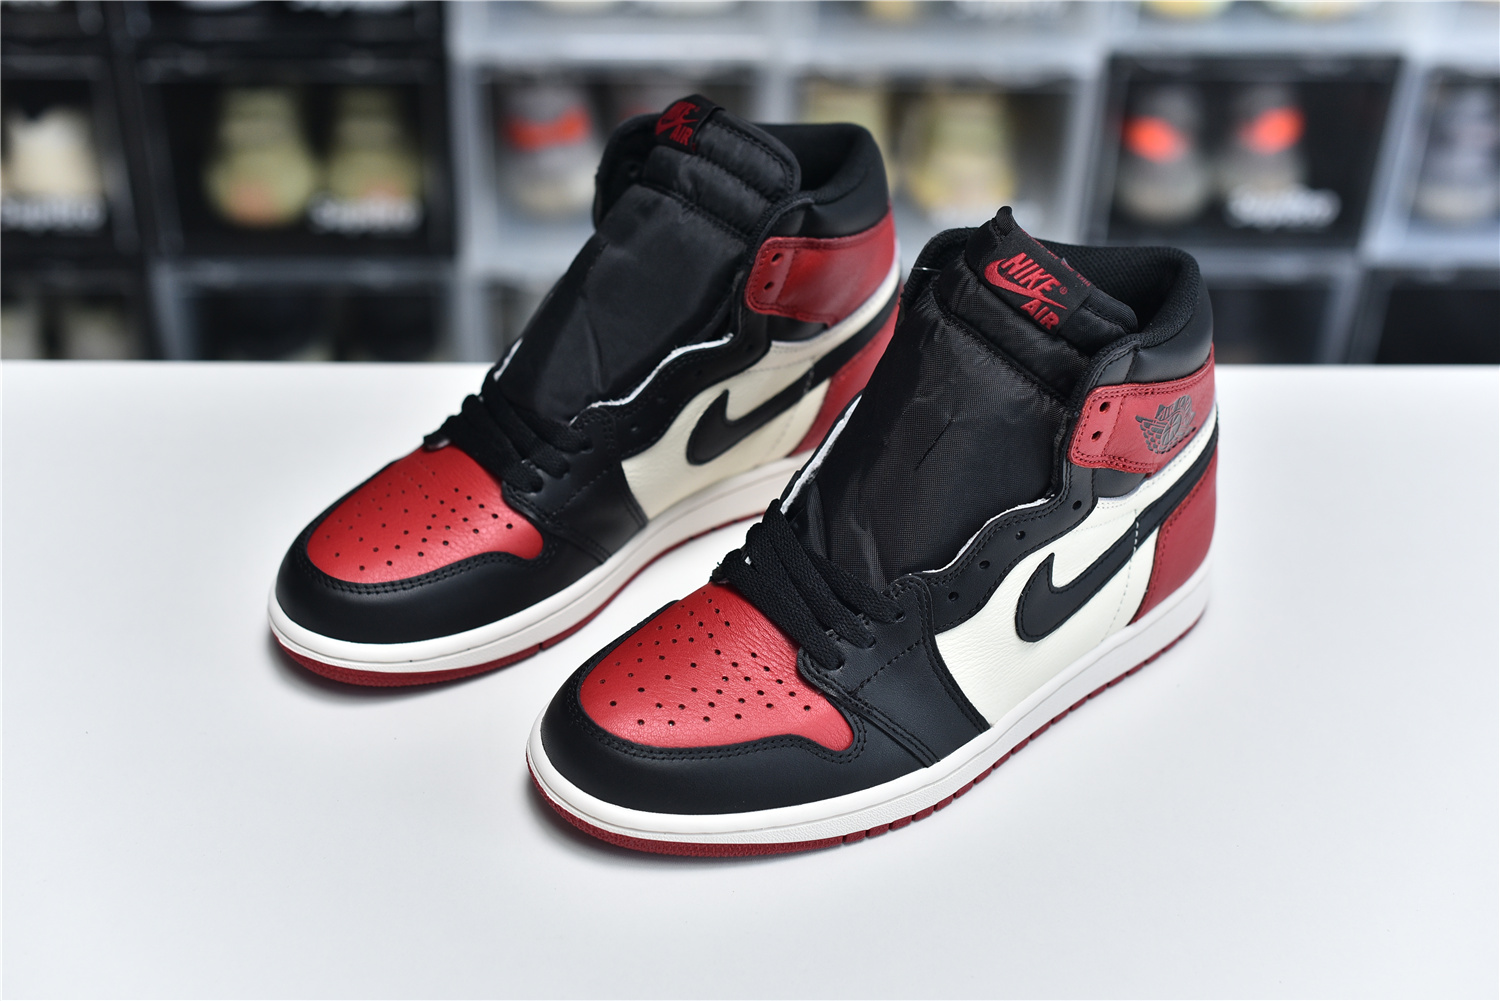 Nike Air Jordan 1 Retro High Og Red Black White Men Sneakers 555088 610 Kickbulk 8 - kickbulk.org